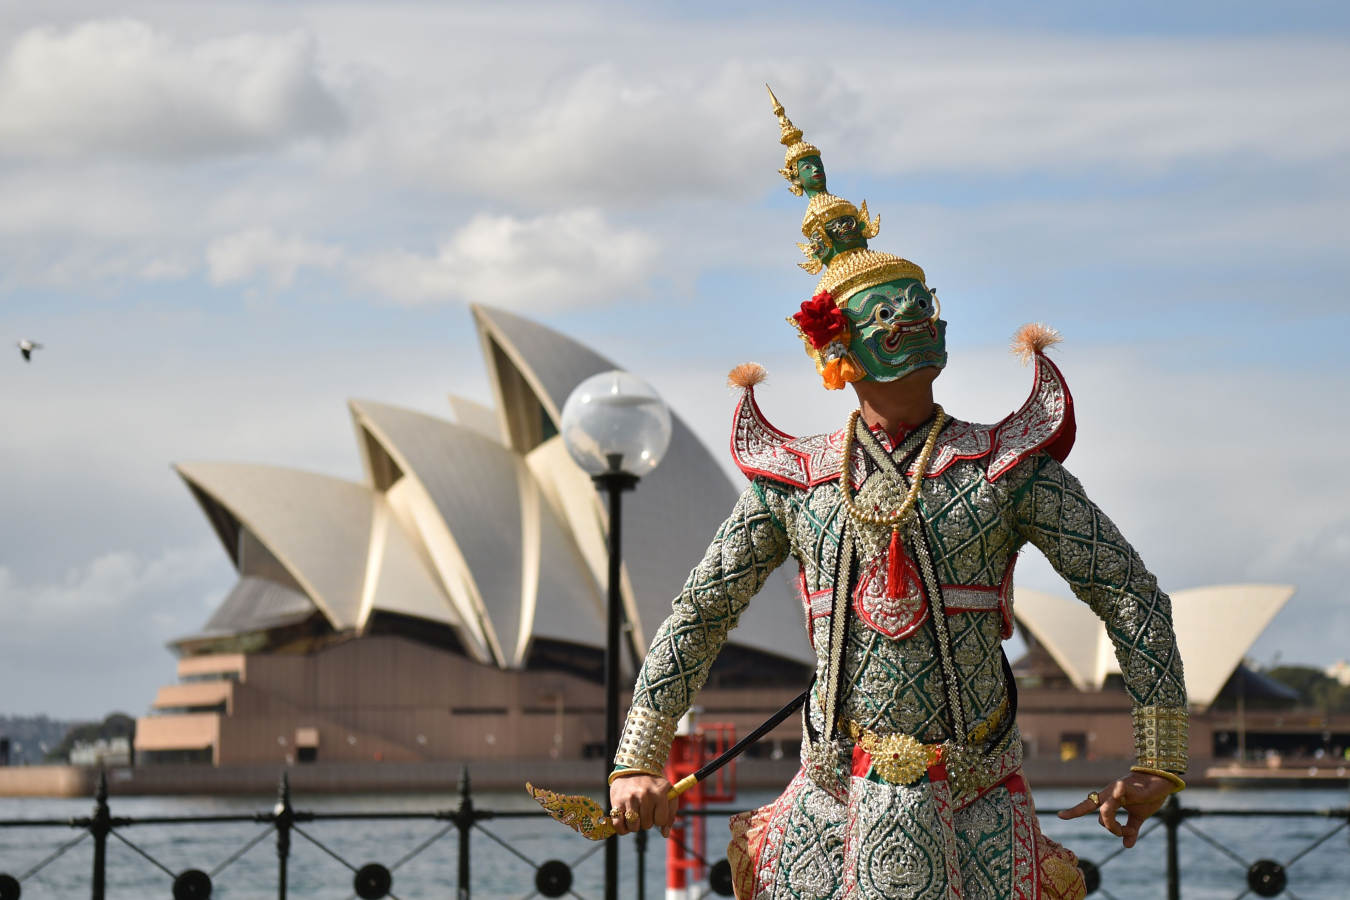 El grupo de danza ha celebrado los 65 años de relaciones bilaterales entre Australia y Tailandia.